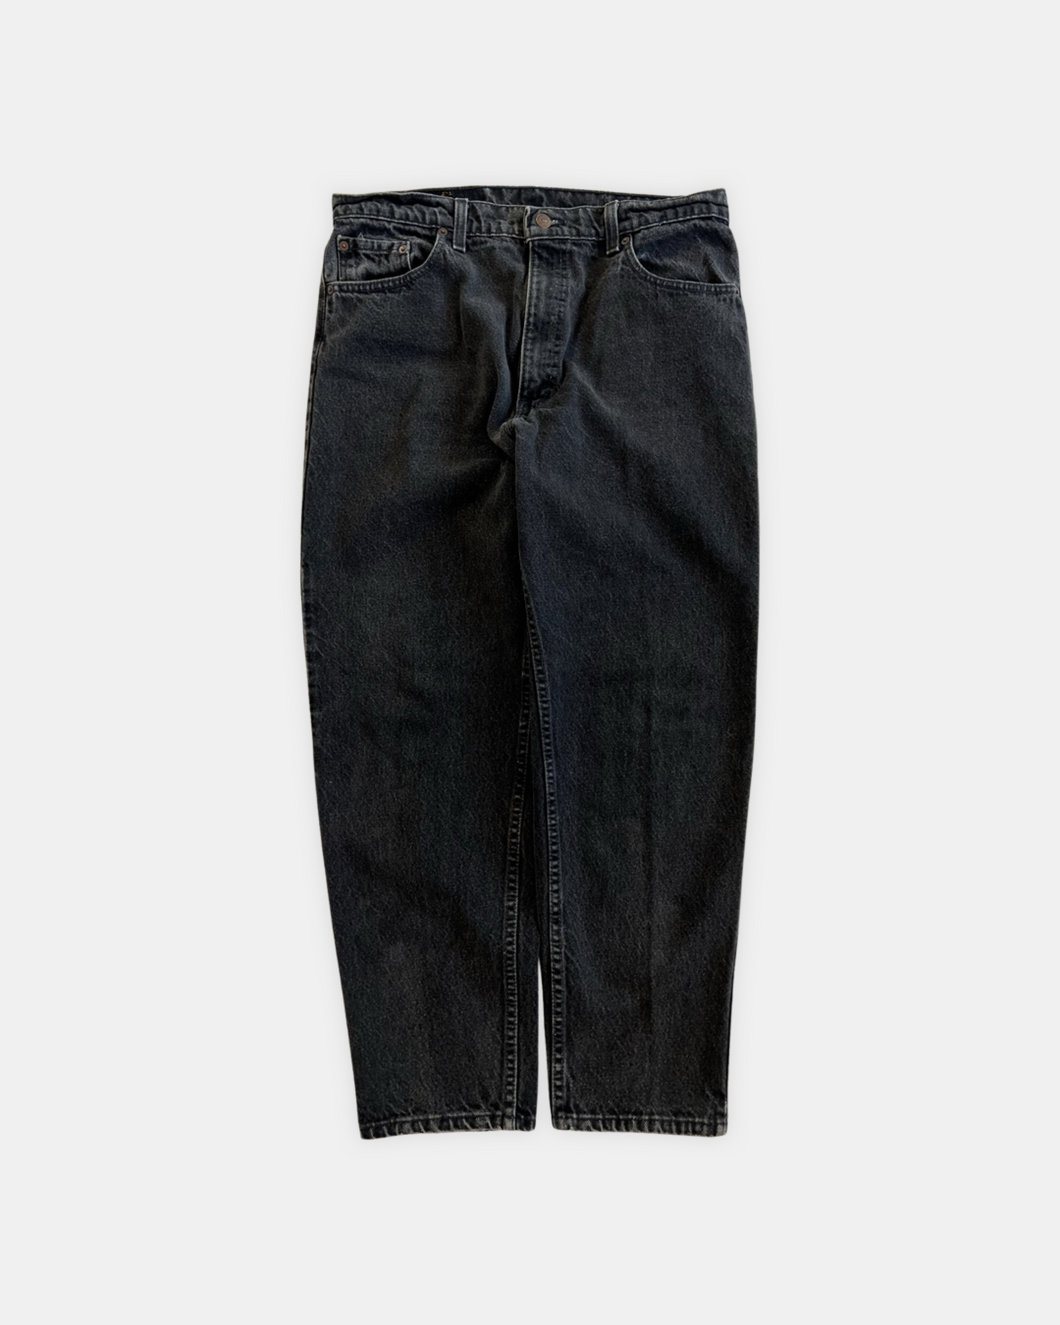 Vintage Levis 550 Jeans